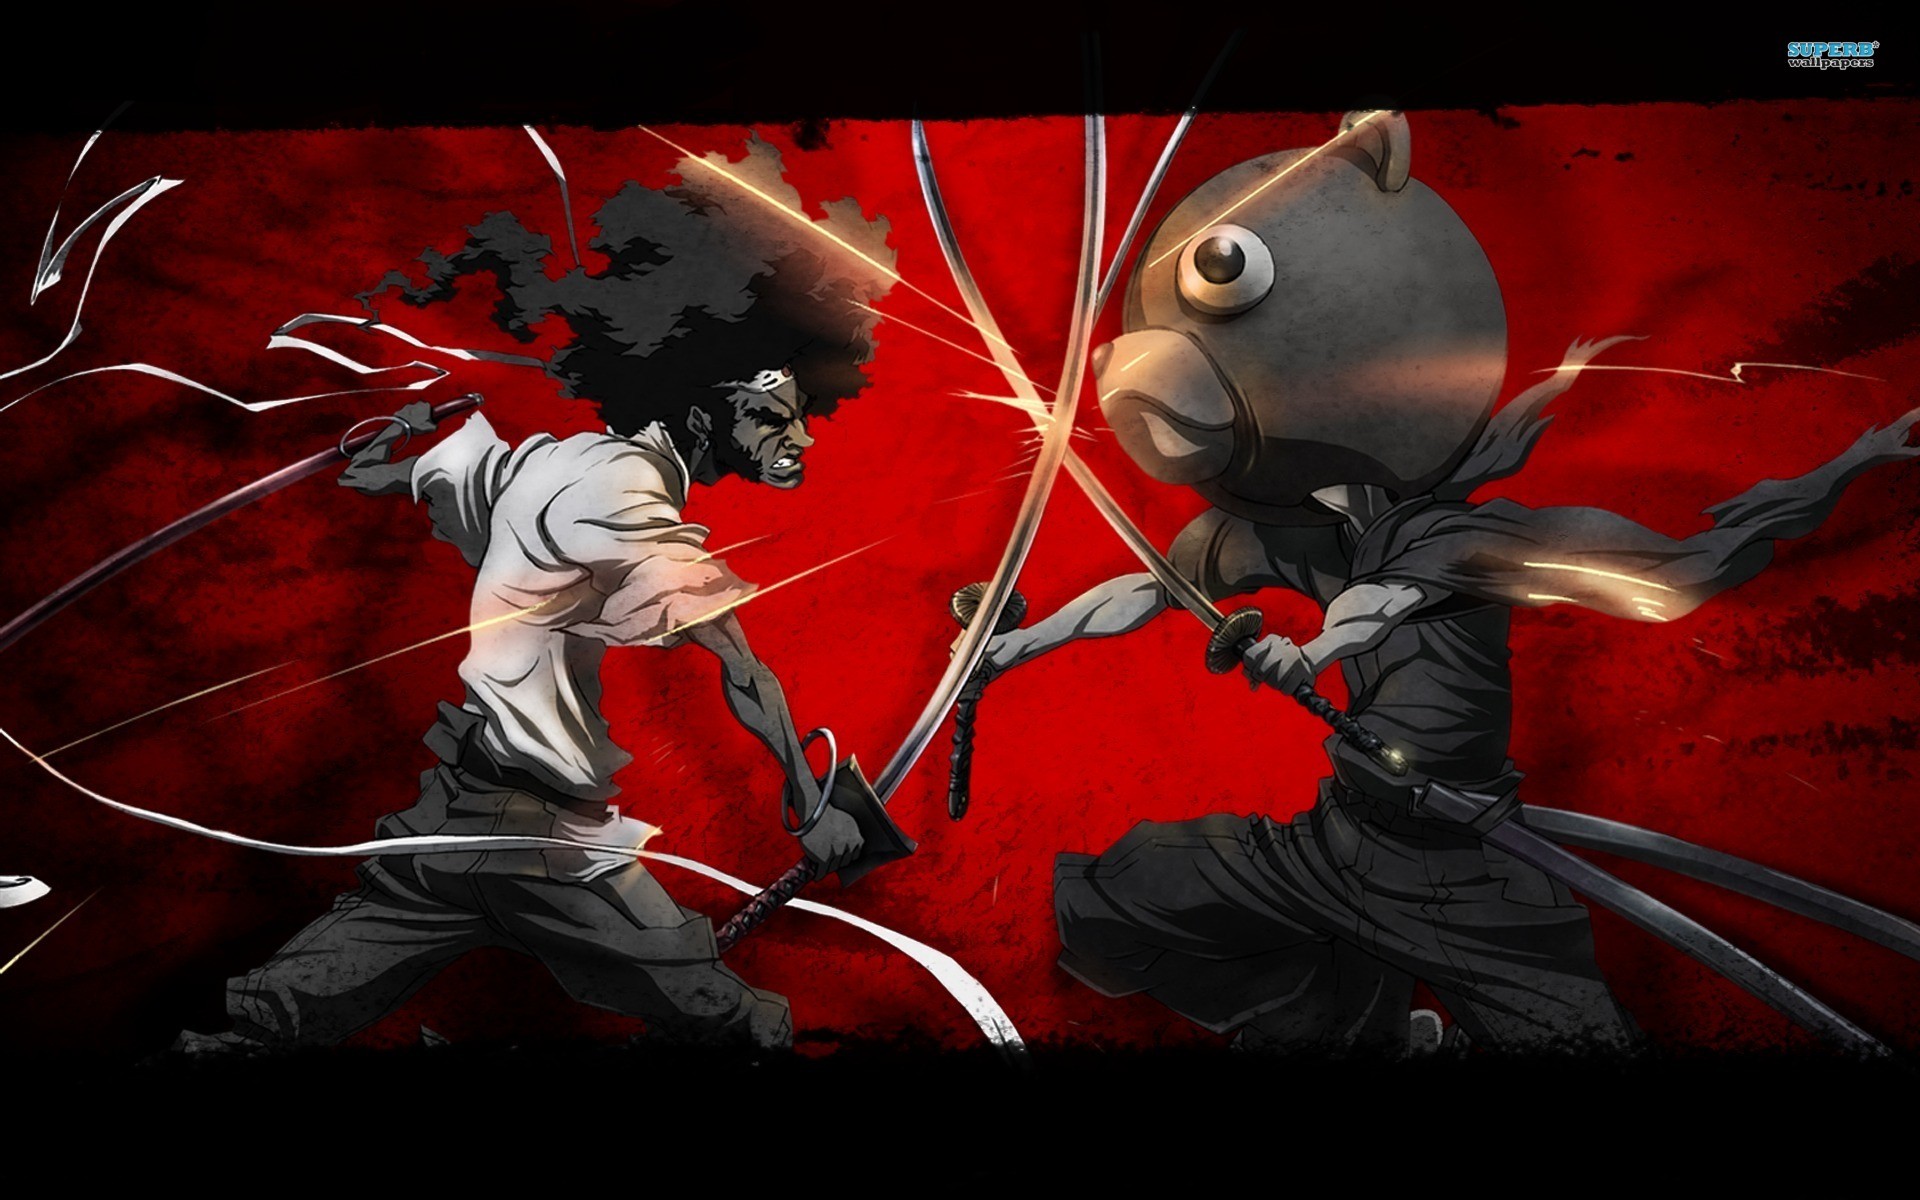 Anime 1920x1200 Afro Samurai anime anime men sword battle red background